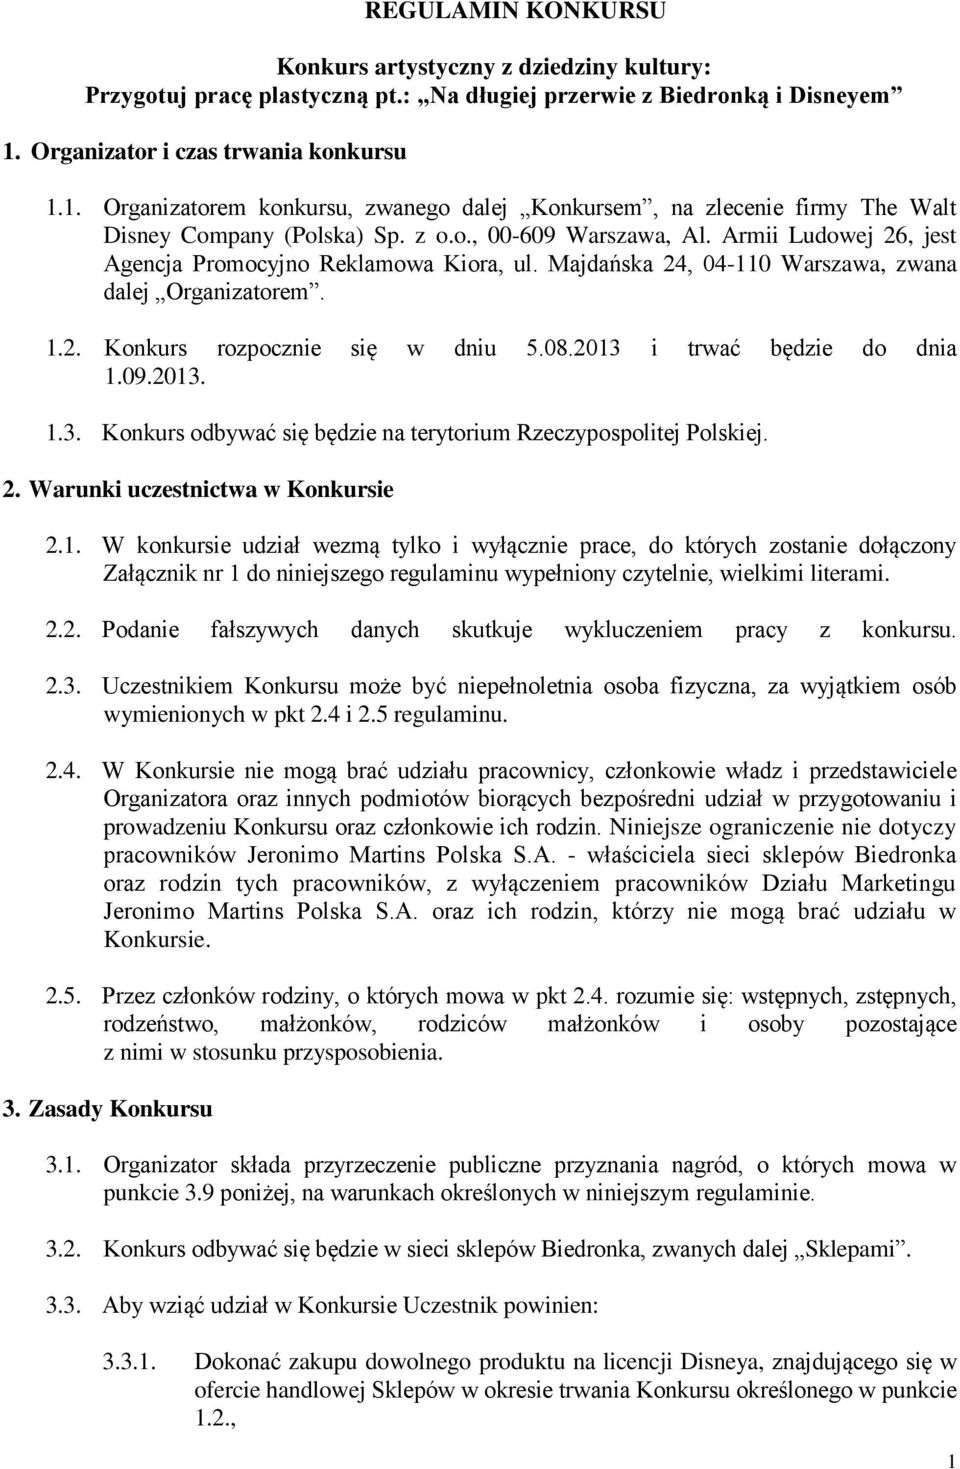 Armii Ludowej 26, jest Agencja Promocyjno Reklamowa Kiora, ul. Majdańska 24, 04-110 Warszawa, zwana dalej Organizatorem. 1.2. Konkurs rozpocznie się w dniu 5.08.2013 